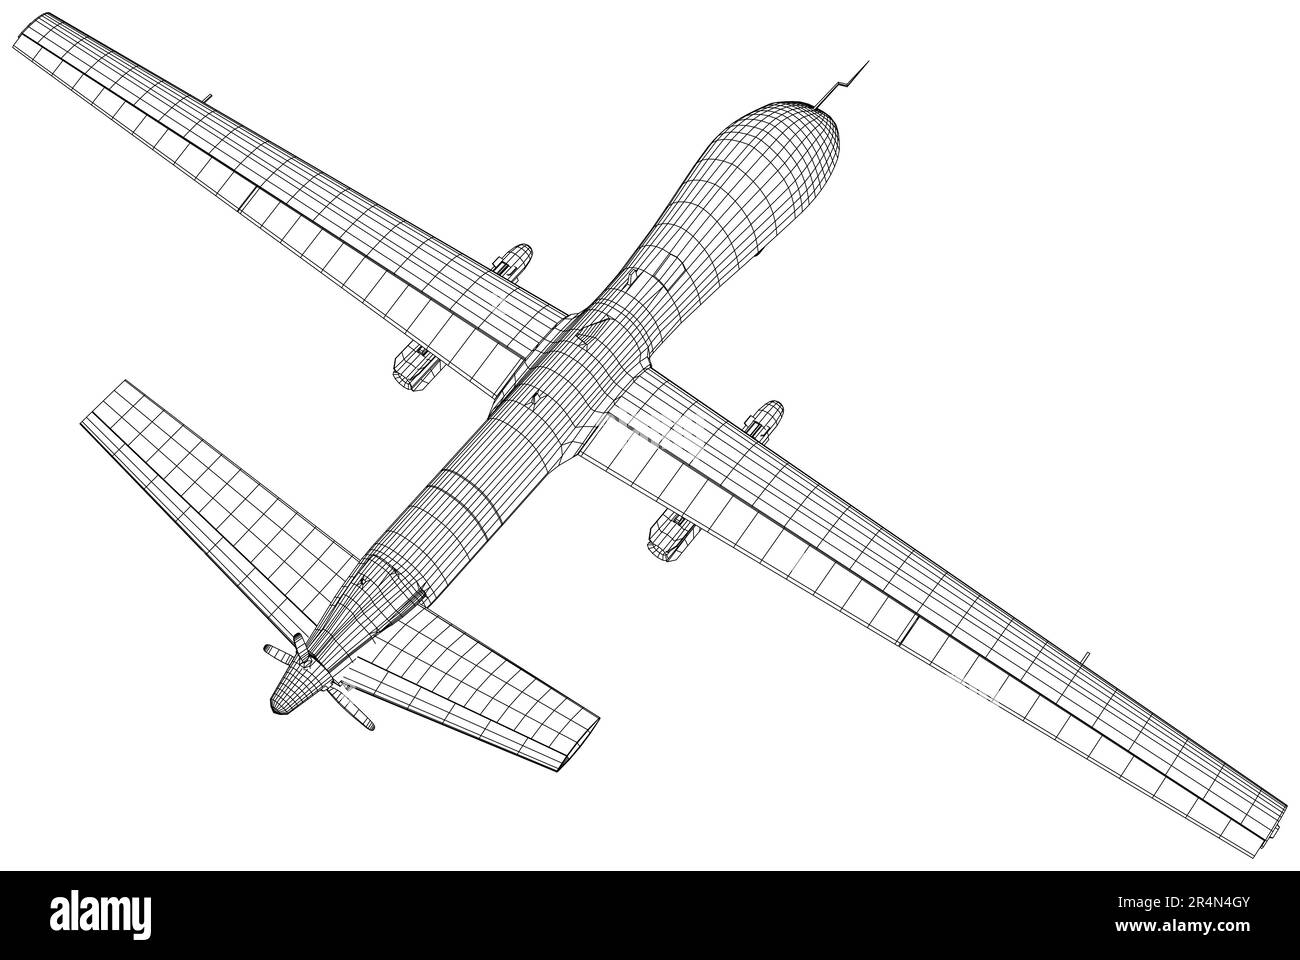 Avion. Drone militaire prédateur. Les couches de lignes visibles et invisibles sont séparées Illustration de Vecteur